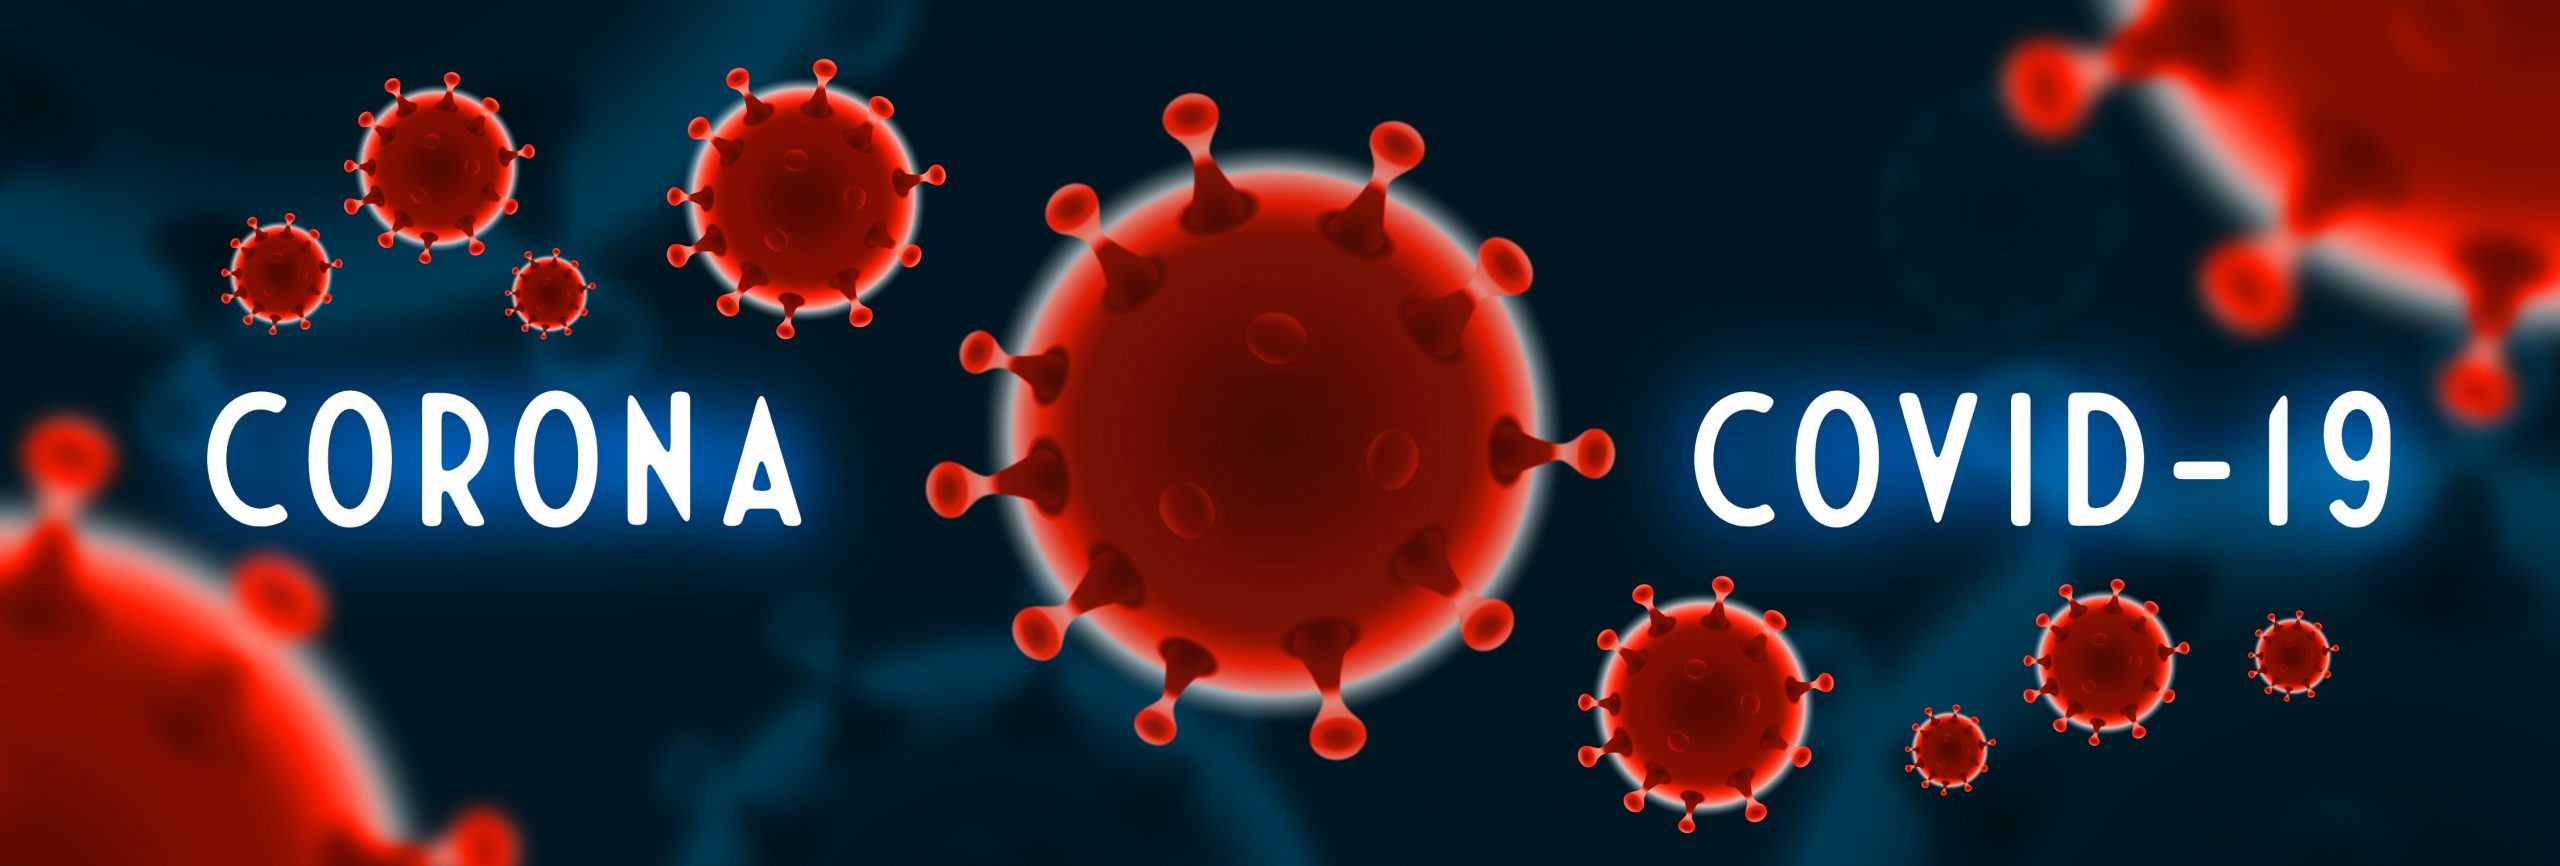 Coronavirus and covid-19 image